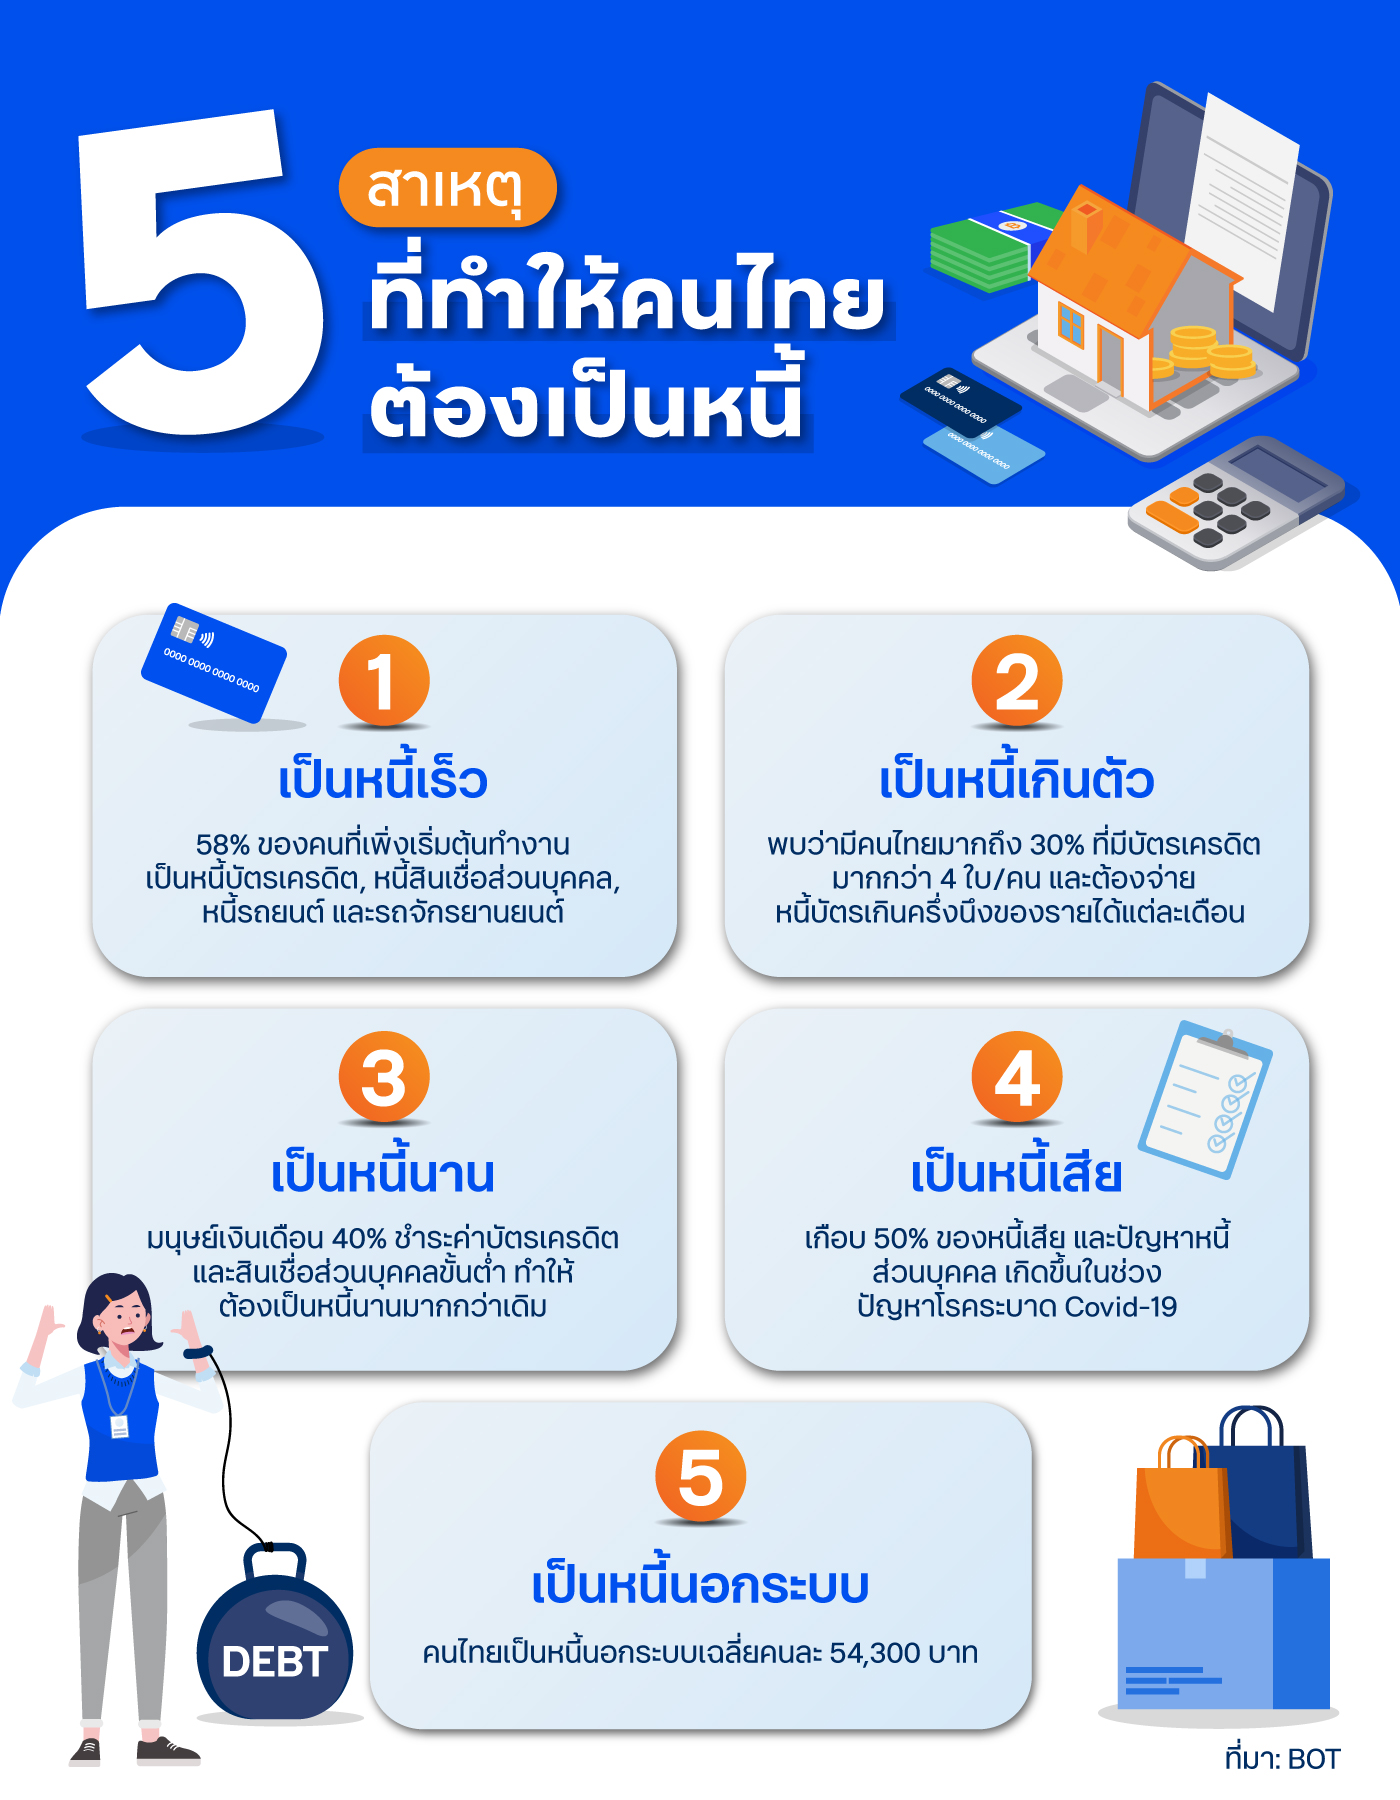 5 สาเหตุที่ทำให้คนไทยต้องเป็นหนี้